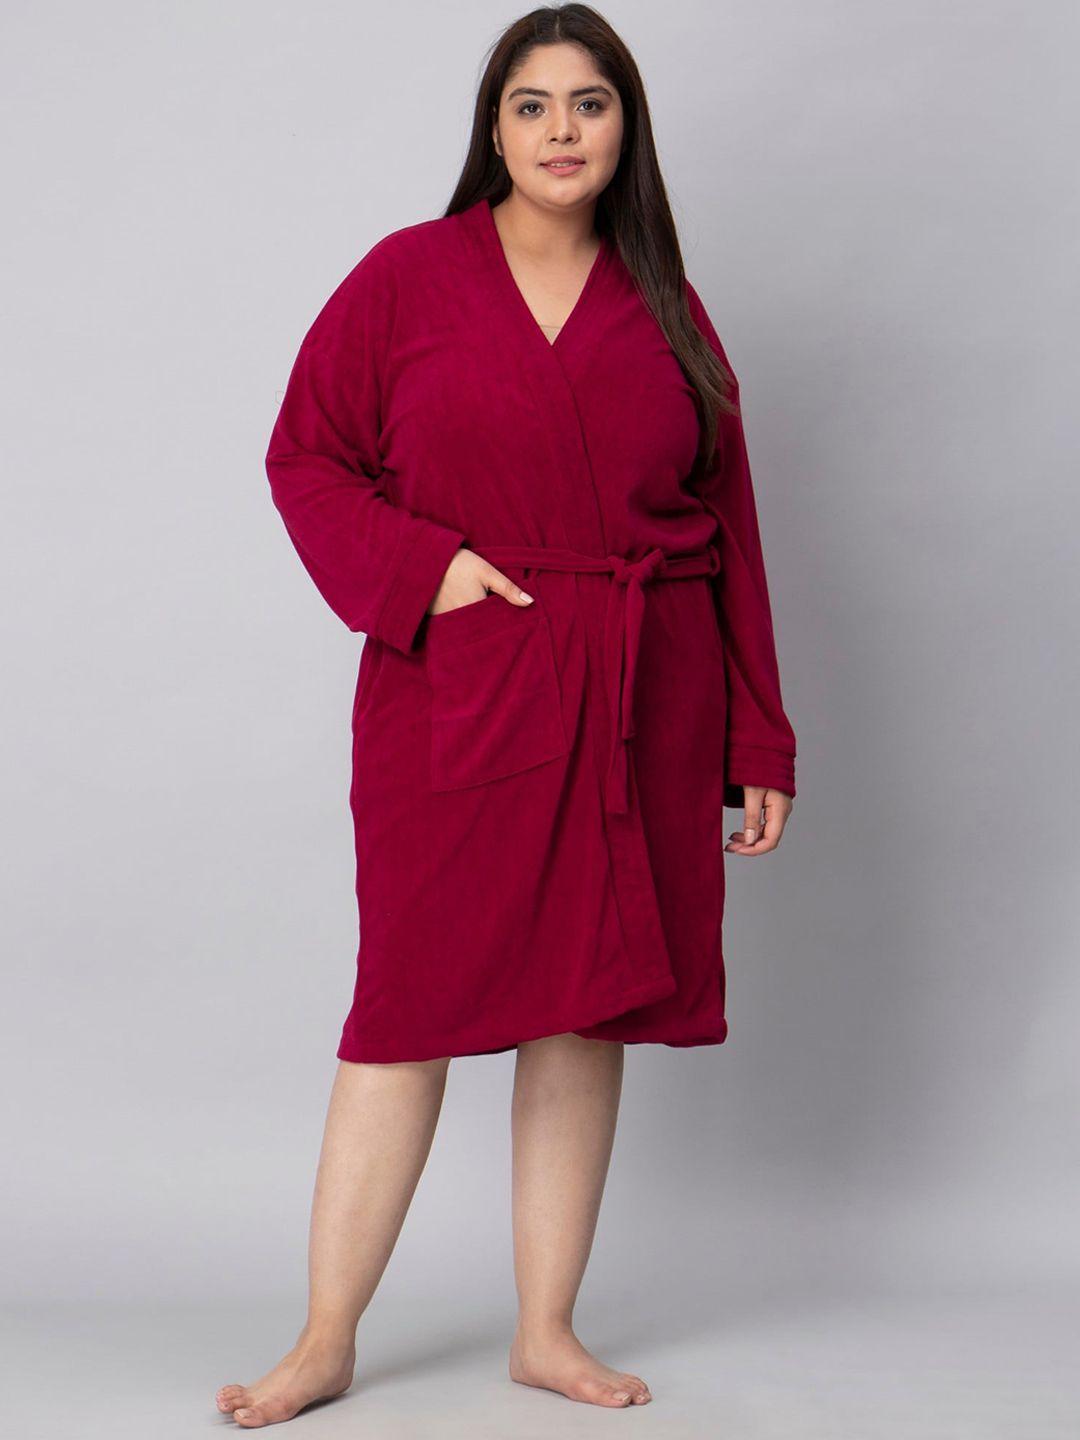 lacylook women plus size maroon bath robe